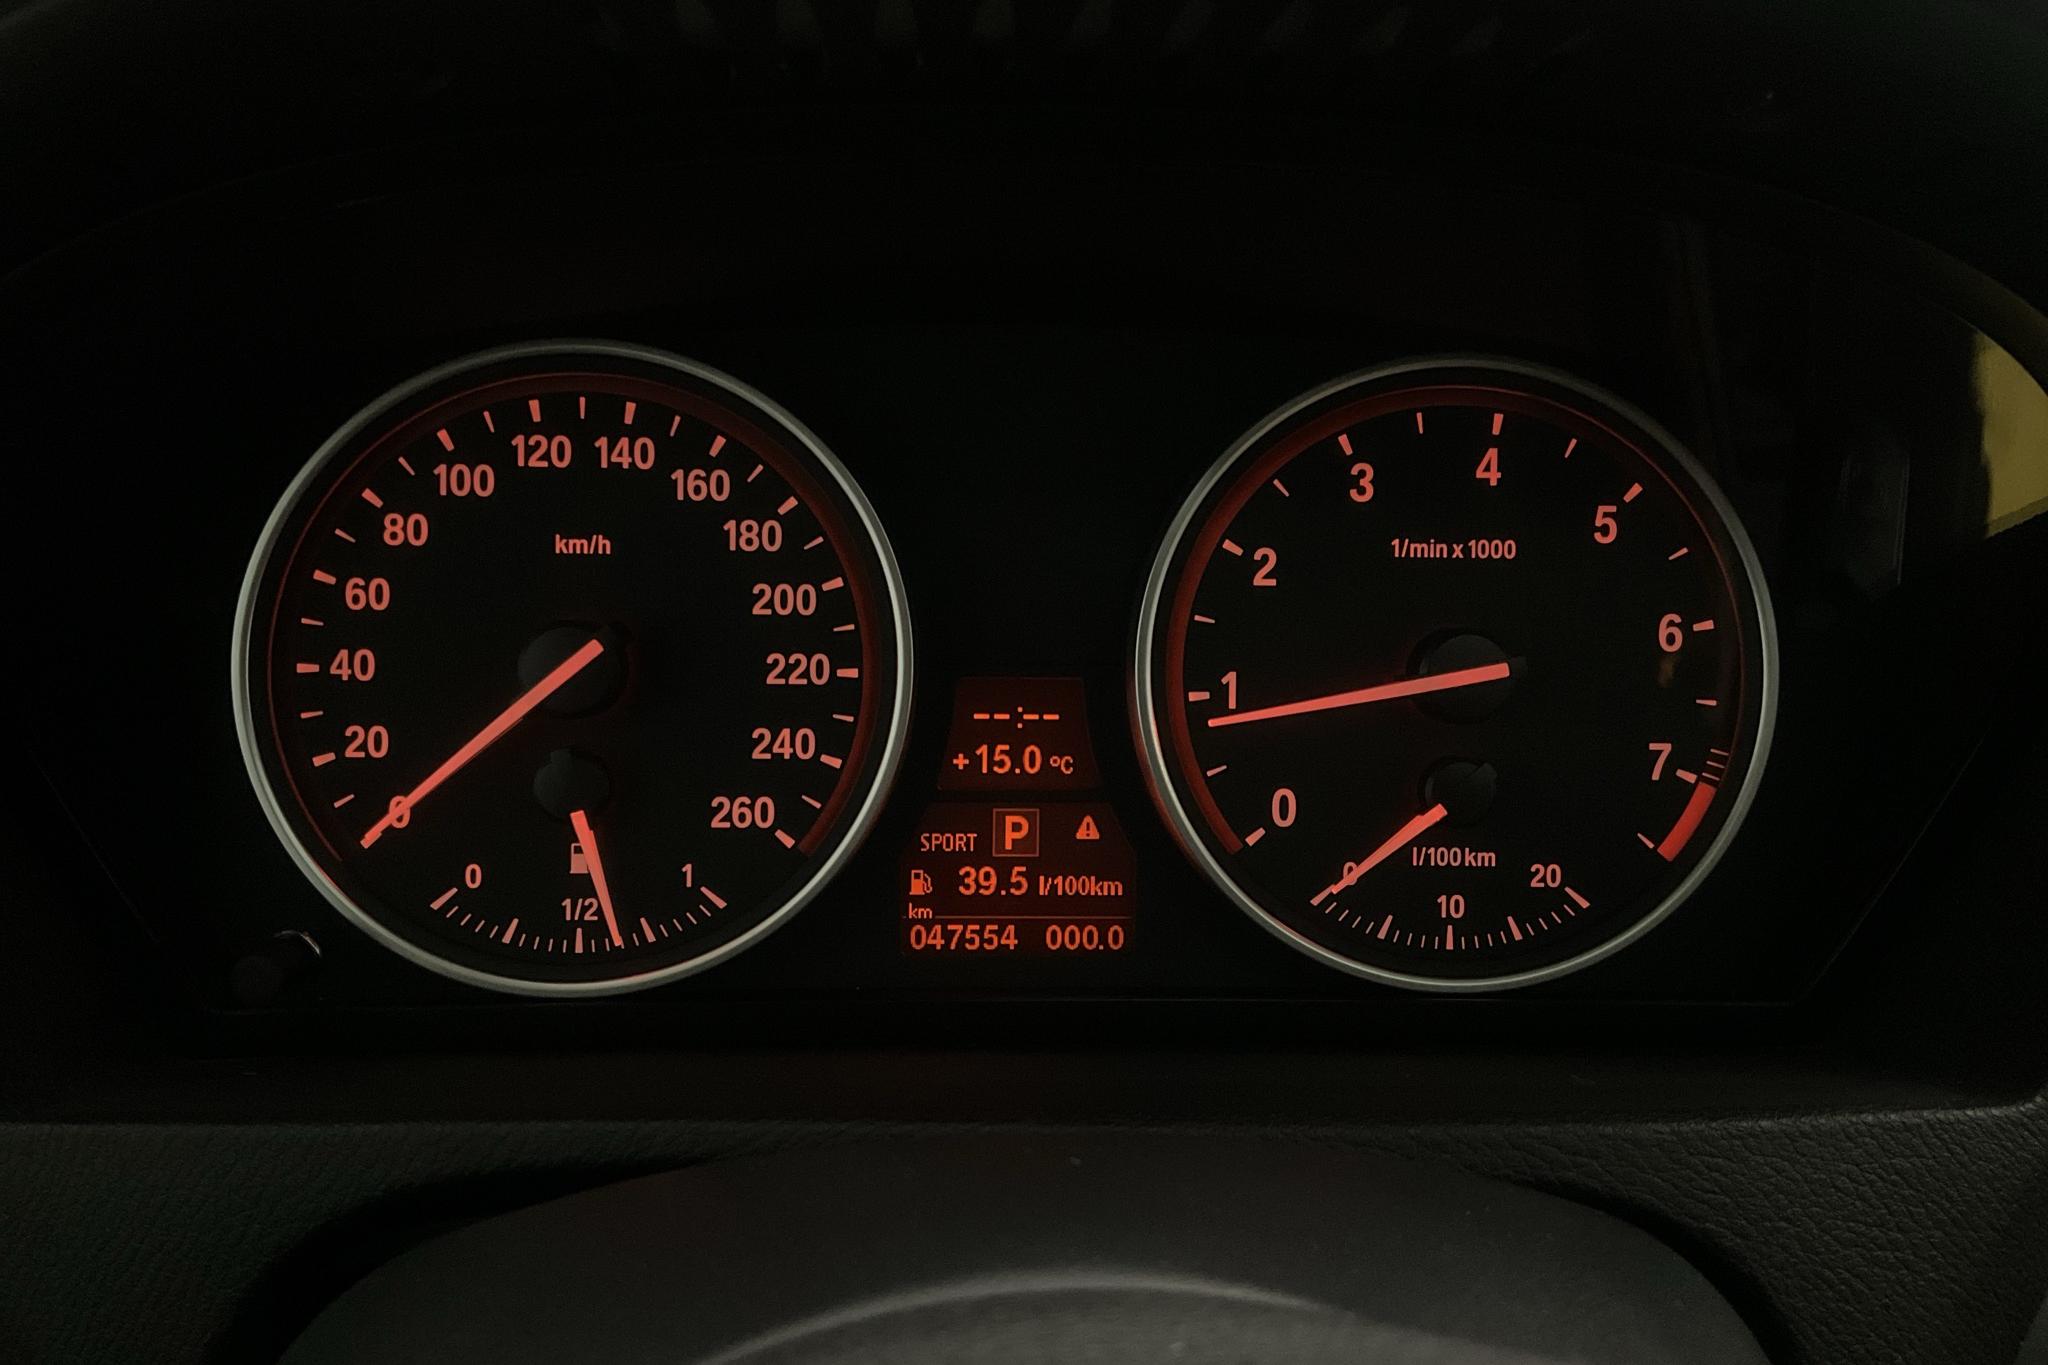 BMW X5 3.0siA, E70 (272hk) - 150 000 km - Automaatne - Light Grey - 2008